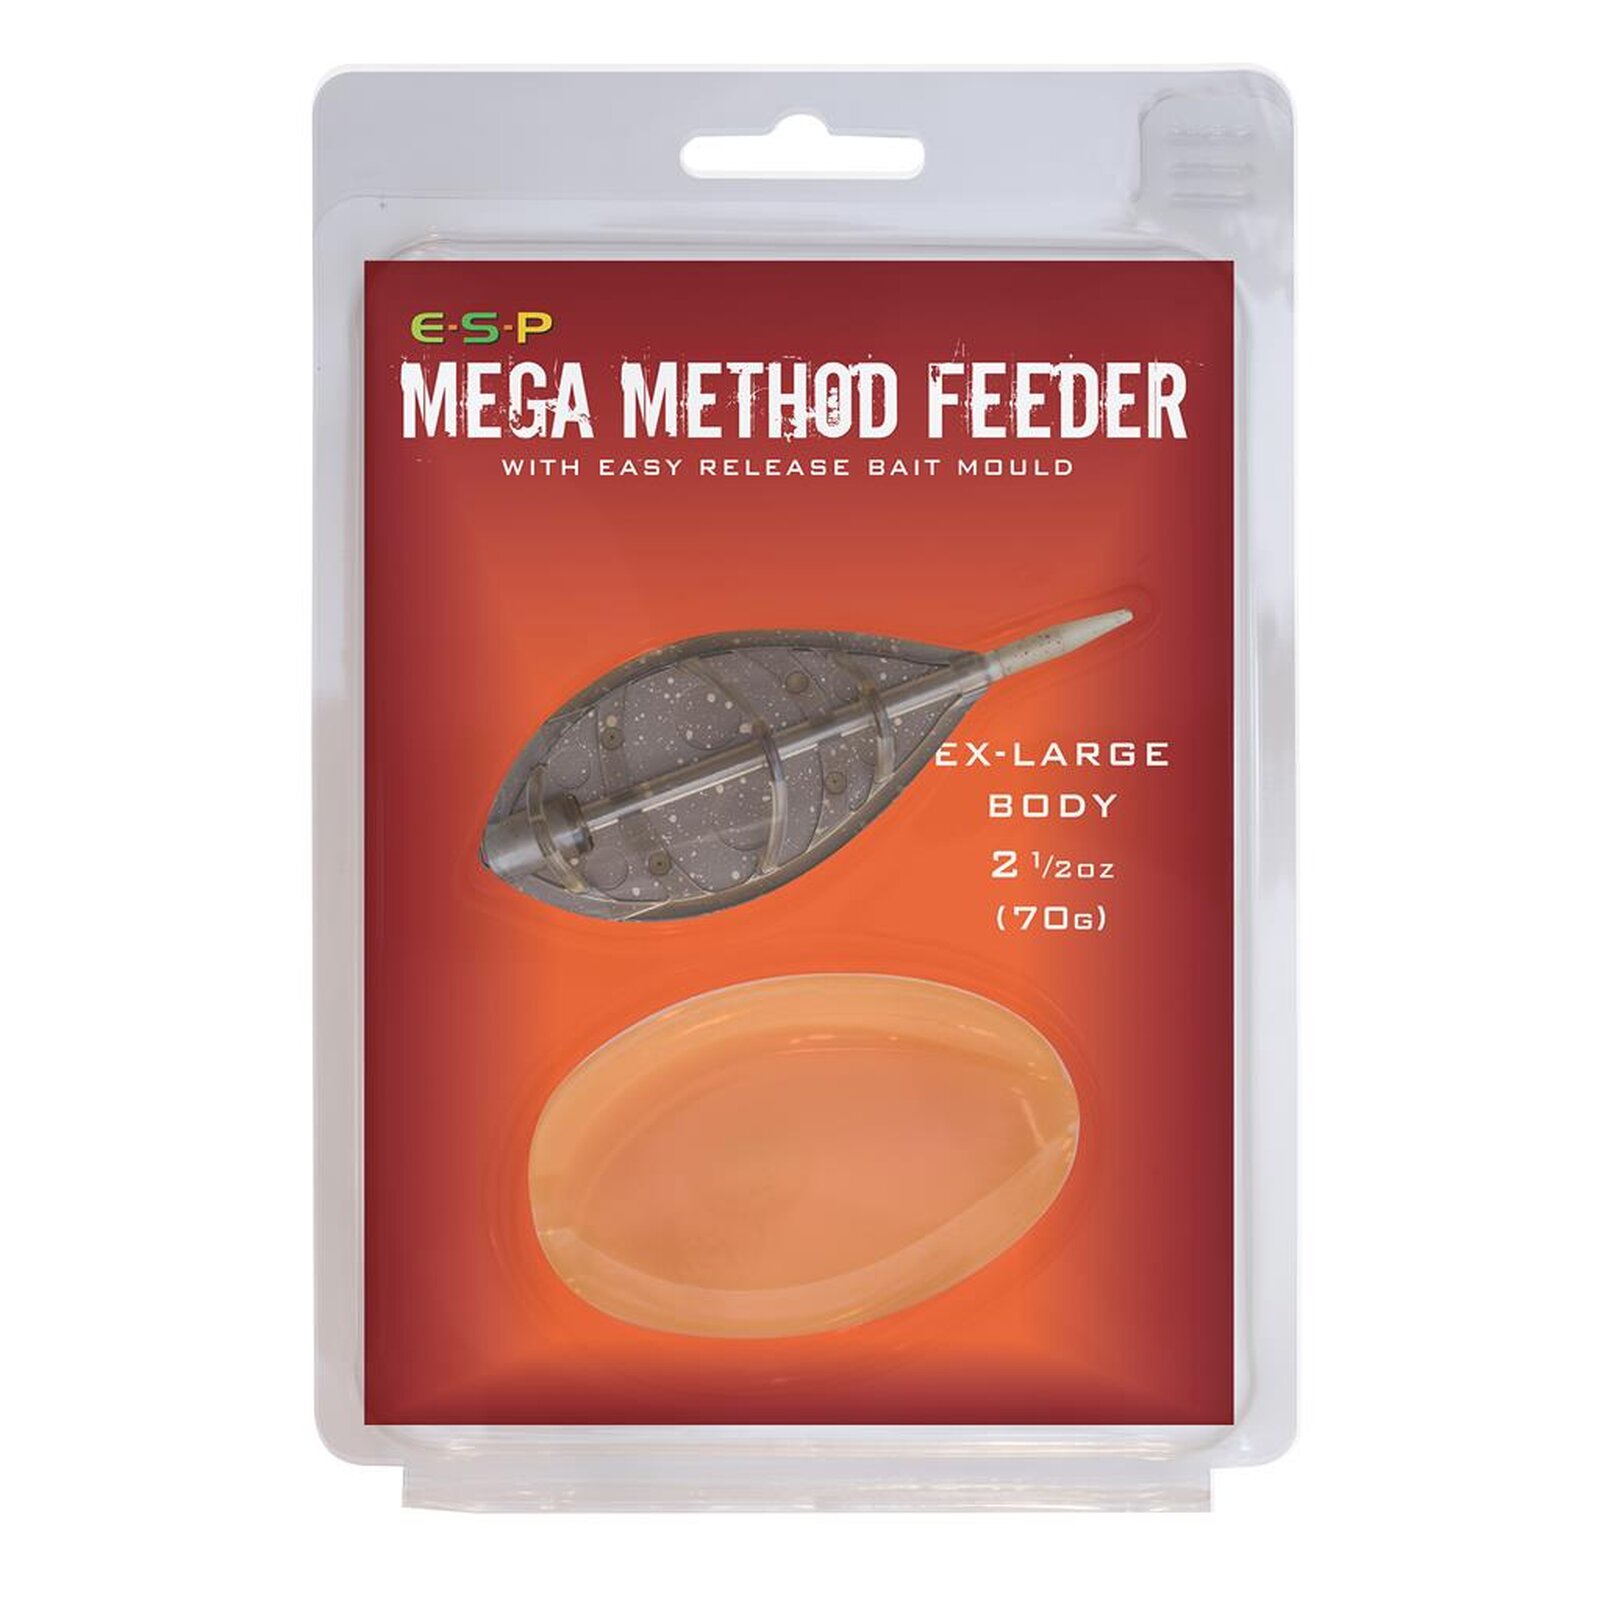 E-S-P Mega Method Feeder & Mould